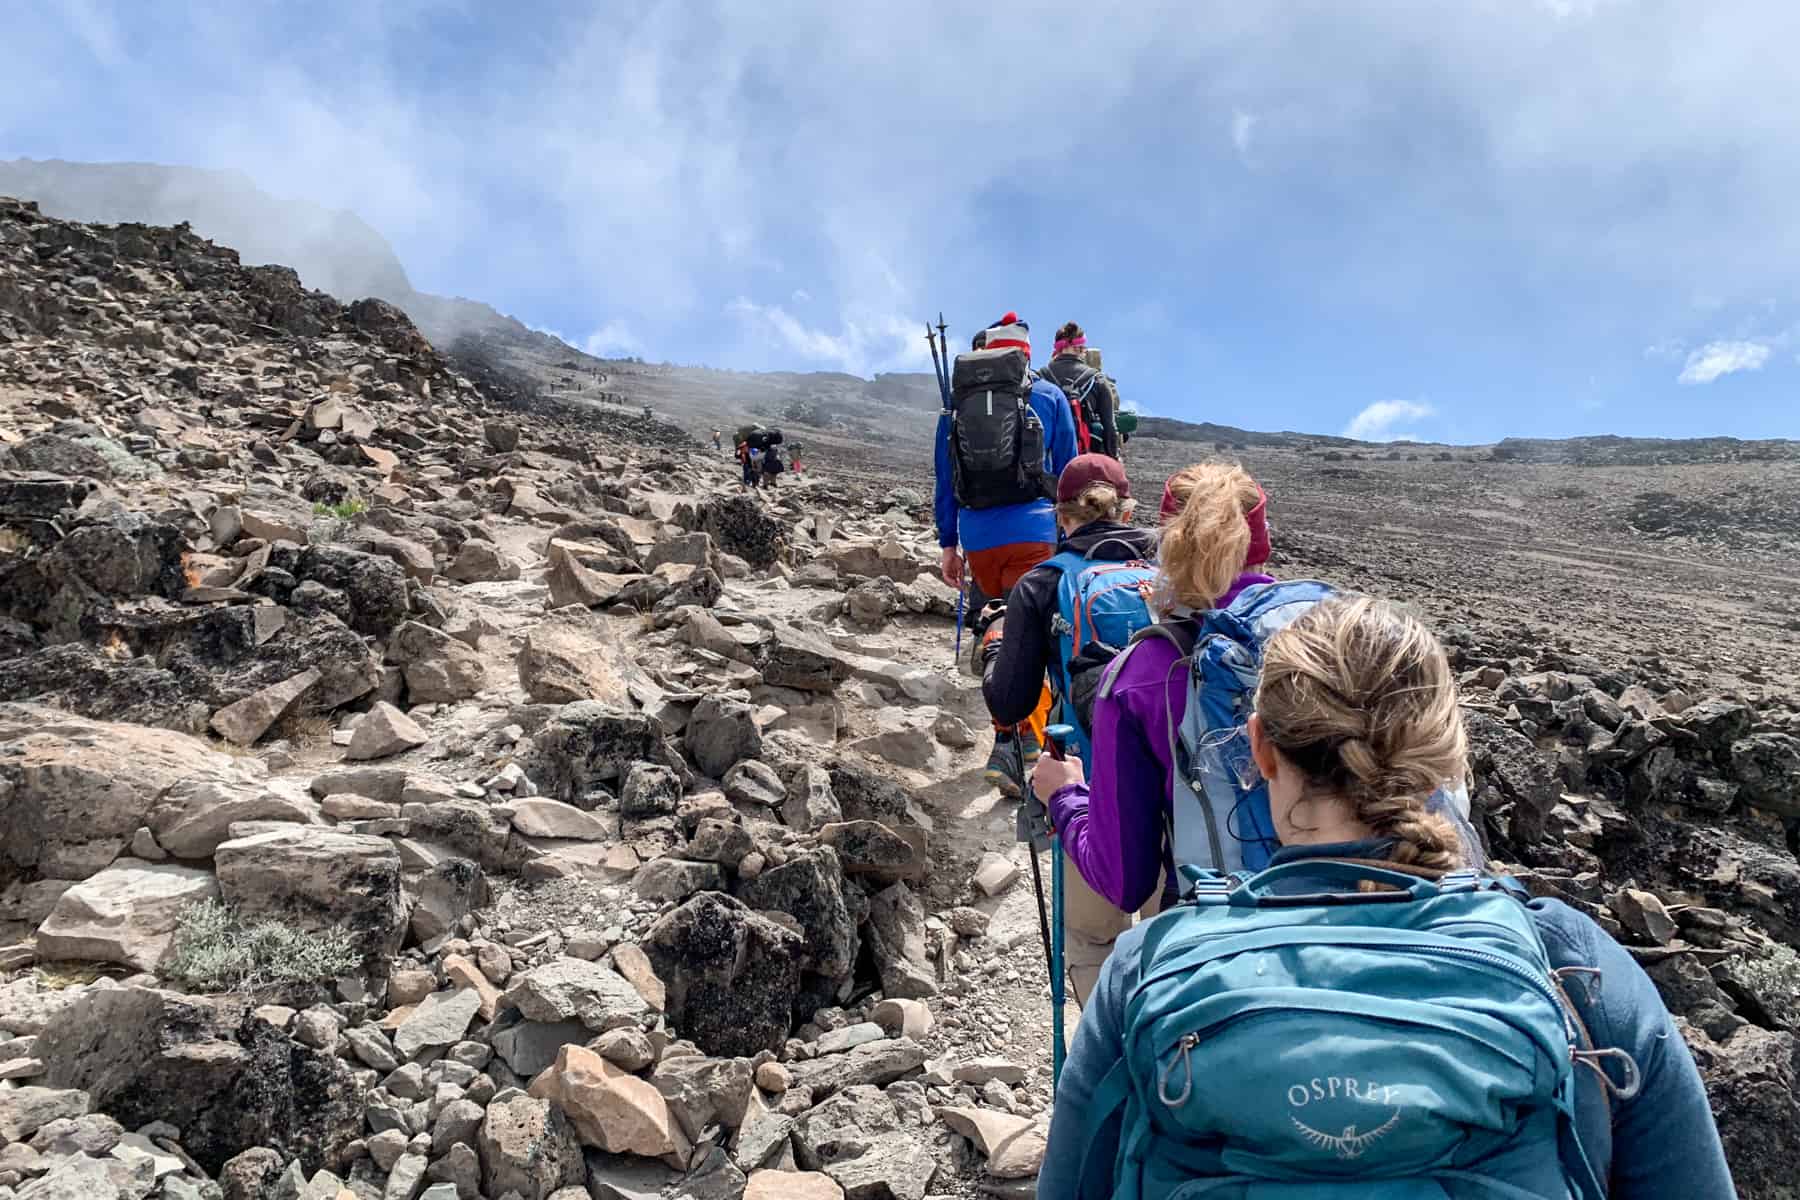 Climbing Kilimanjaro in February